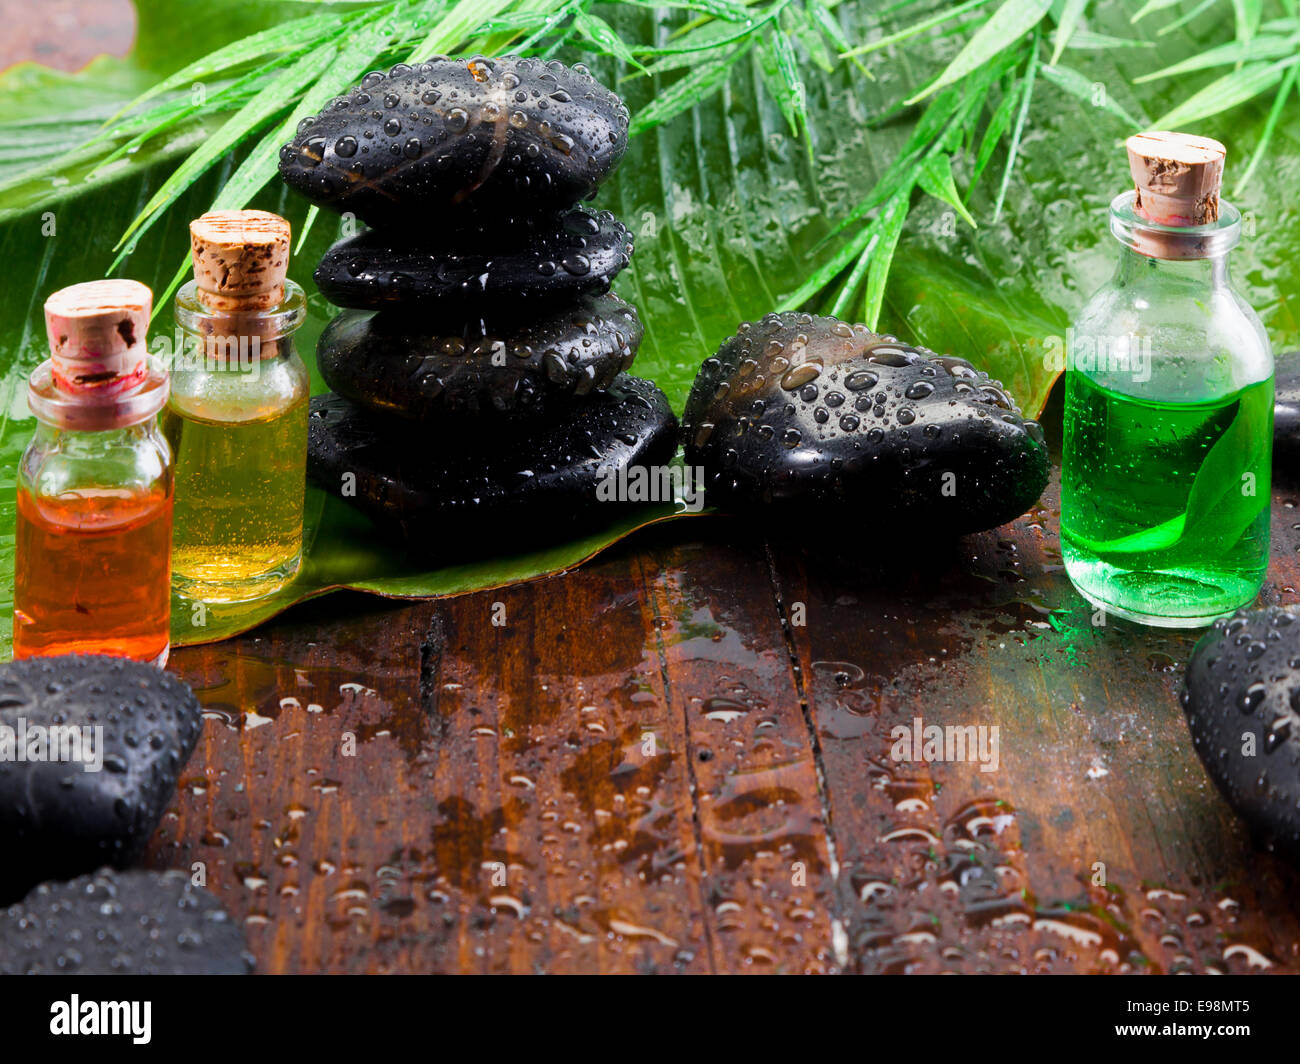 Bouteilles d'huile essentielle et extraits de plantes noir lisse des pierres de massage aromathérapie dans un traitement spa still life Banque D'Images